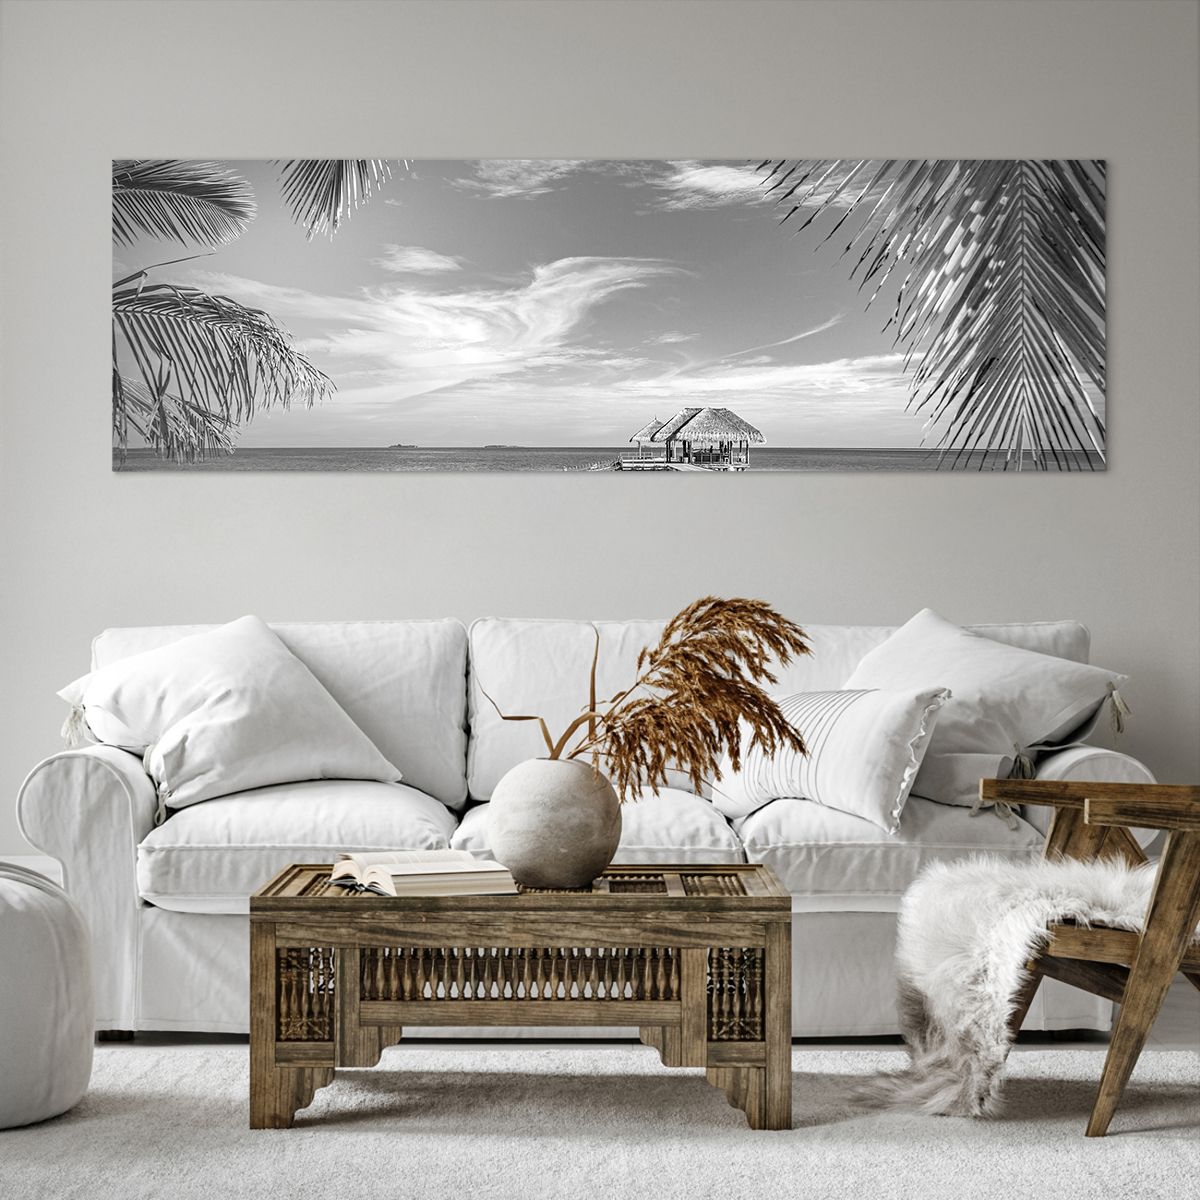 Bild auf Leinwand Meereslandschaft, Bild auf Leinwand Strand, Bild auf Leinwand Holzsteg, Bild auf Leinwand Kokusnuss-Palme, Bild auf Leinwand Schwarz Und Weiß